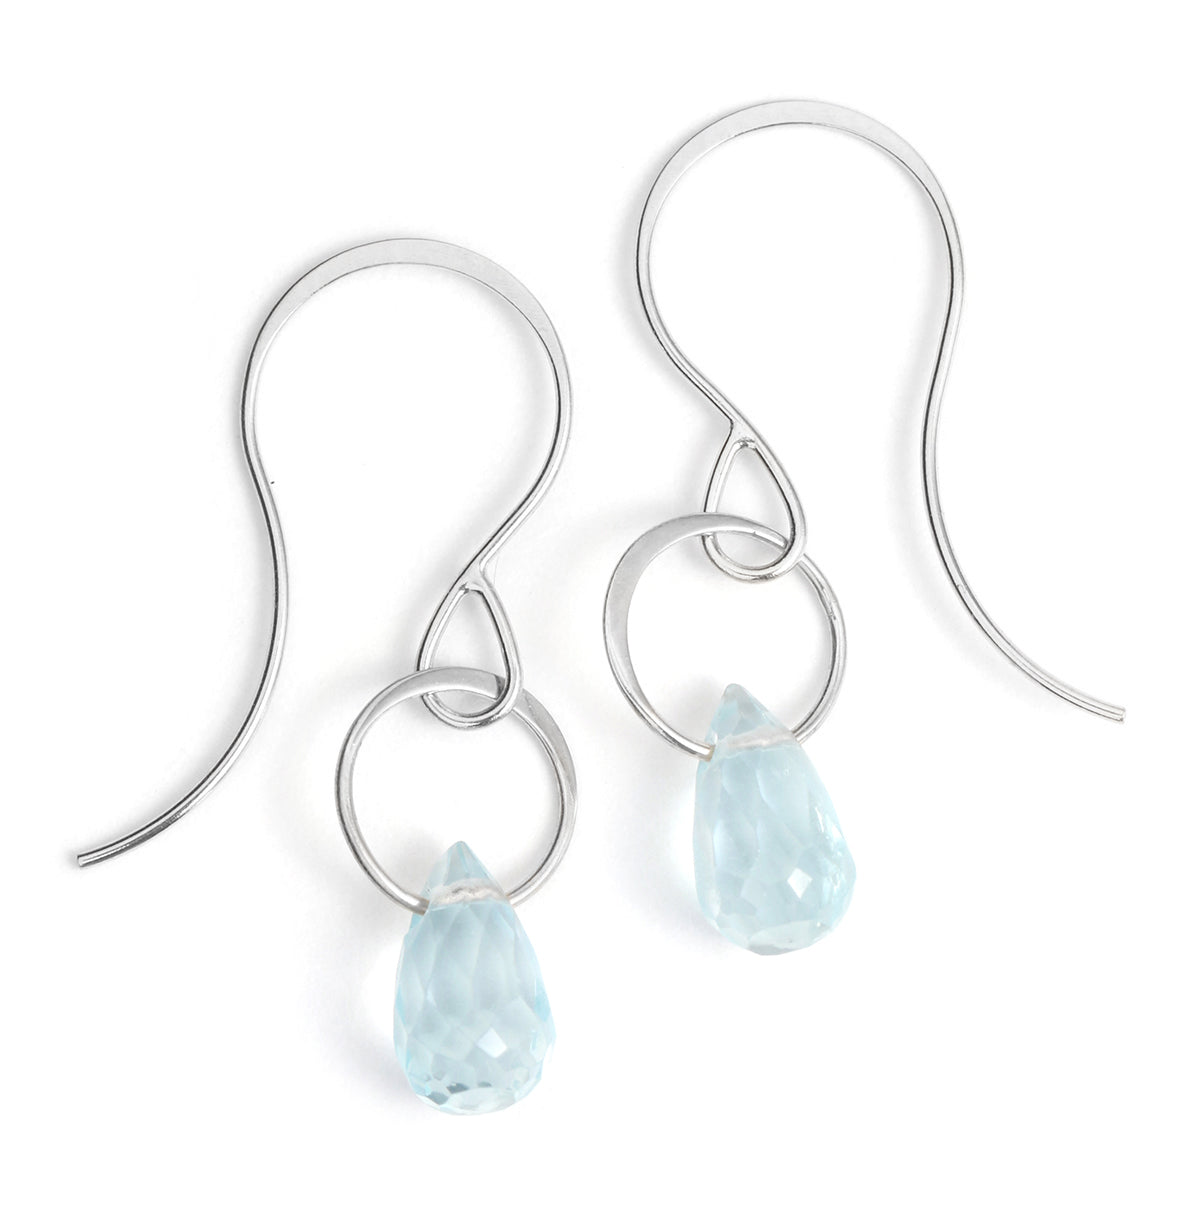 Blue topaz single drop earrings - Melissa Joy Manning Jewelry